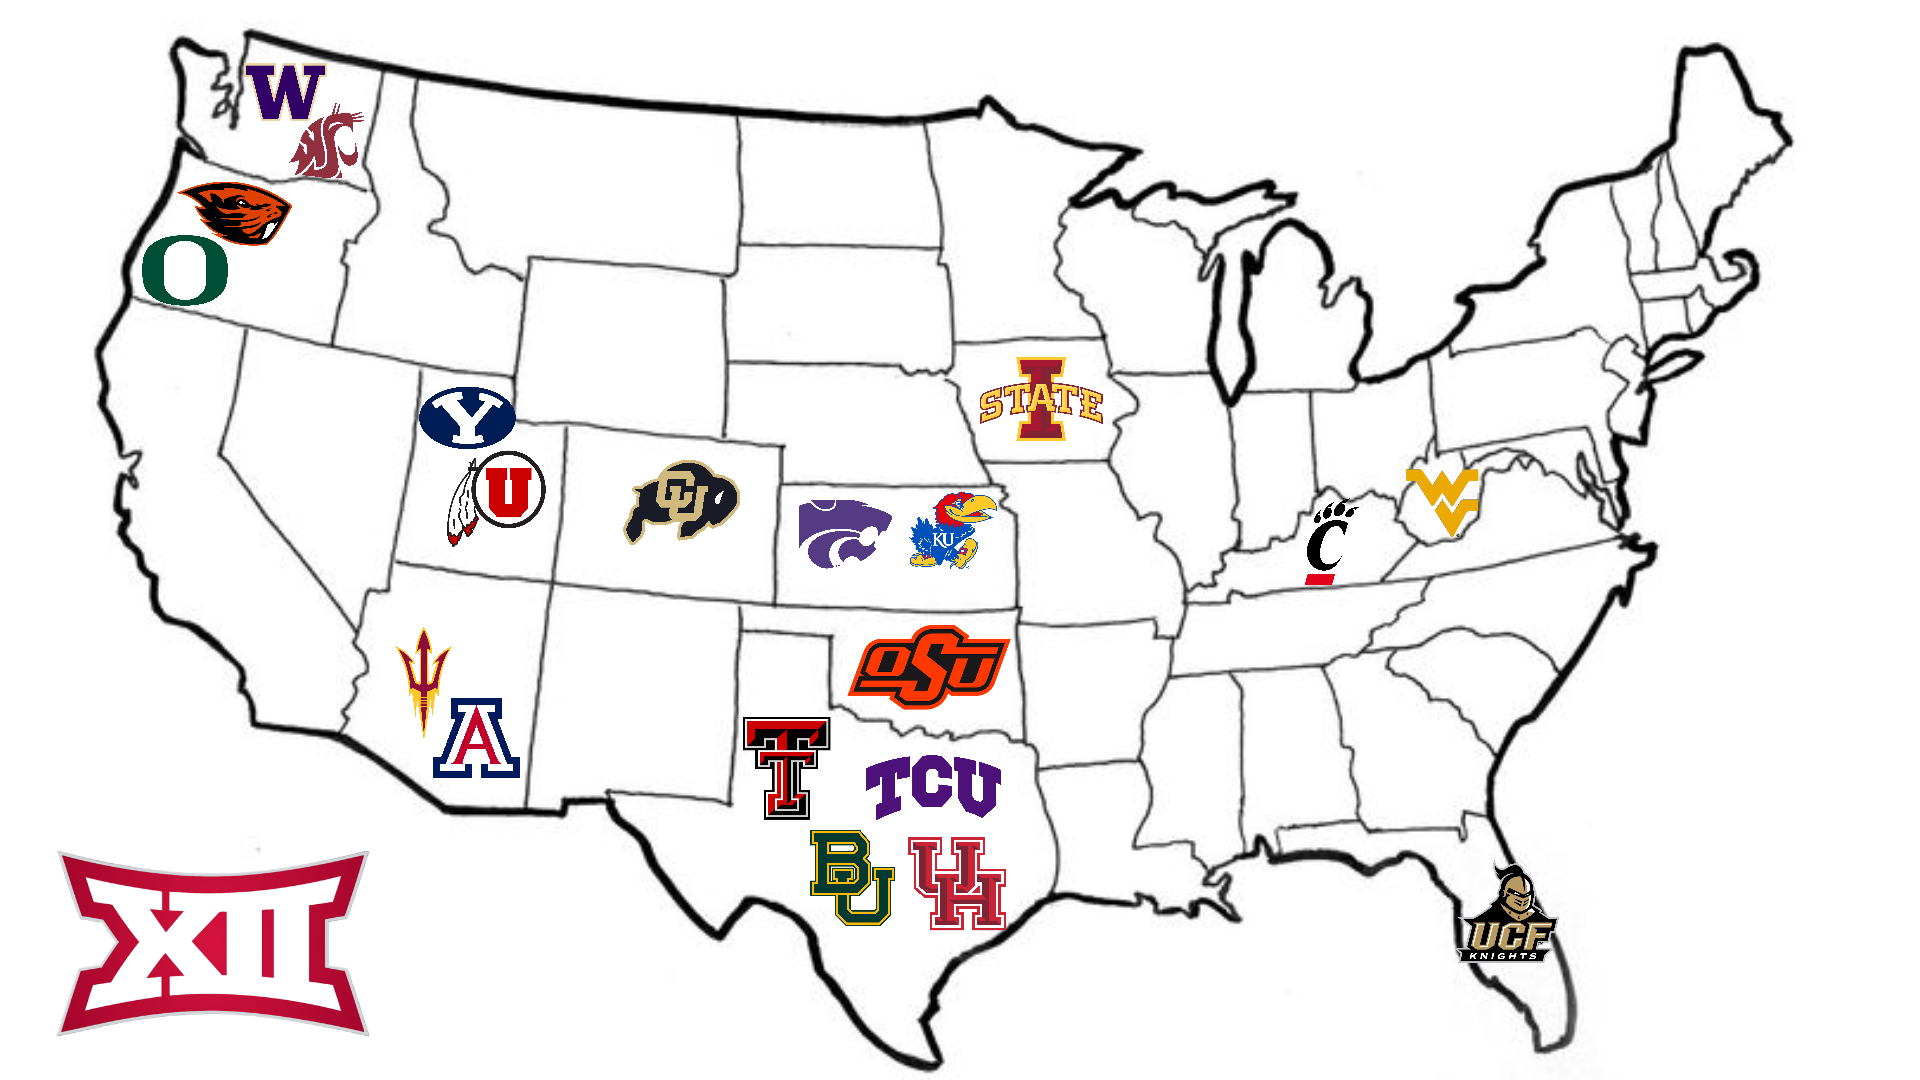 Pac 12 x Big 12 crossover expansion map. Including Oregon, Oregon St., Washington, Washington St., Utah, Arizona St., Arizona, and Colorado.